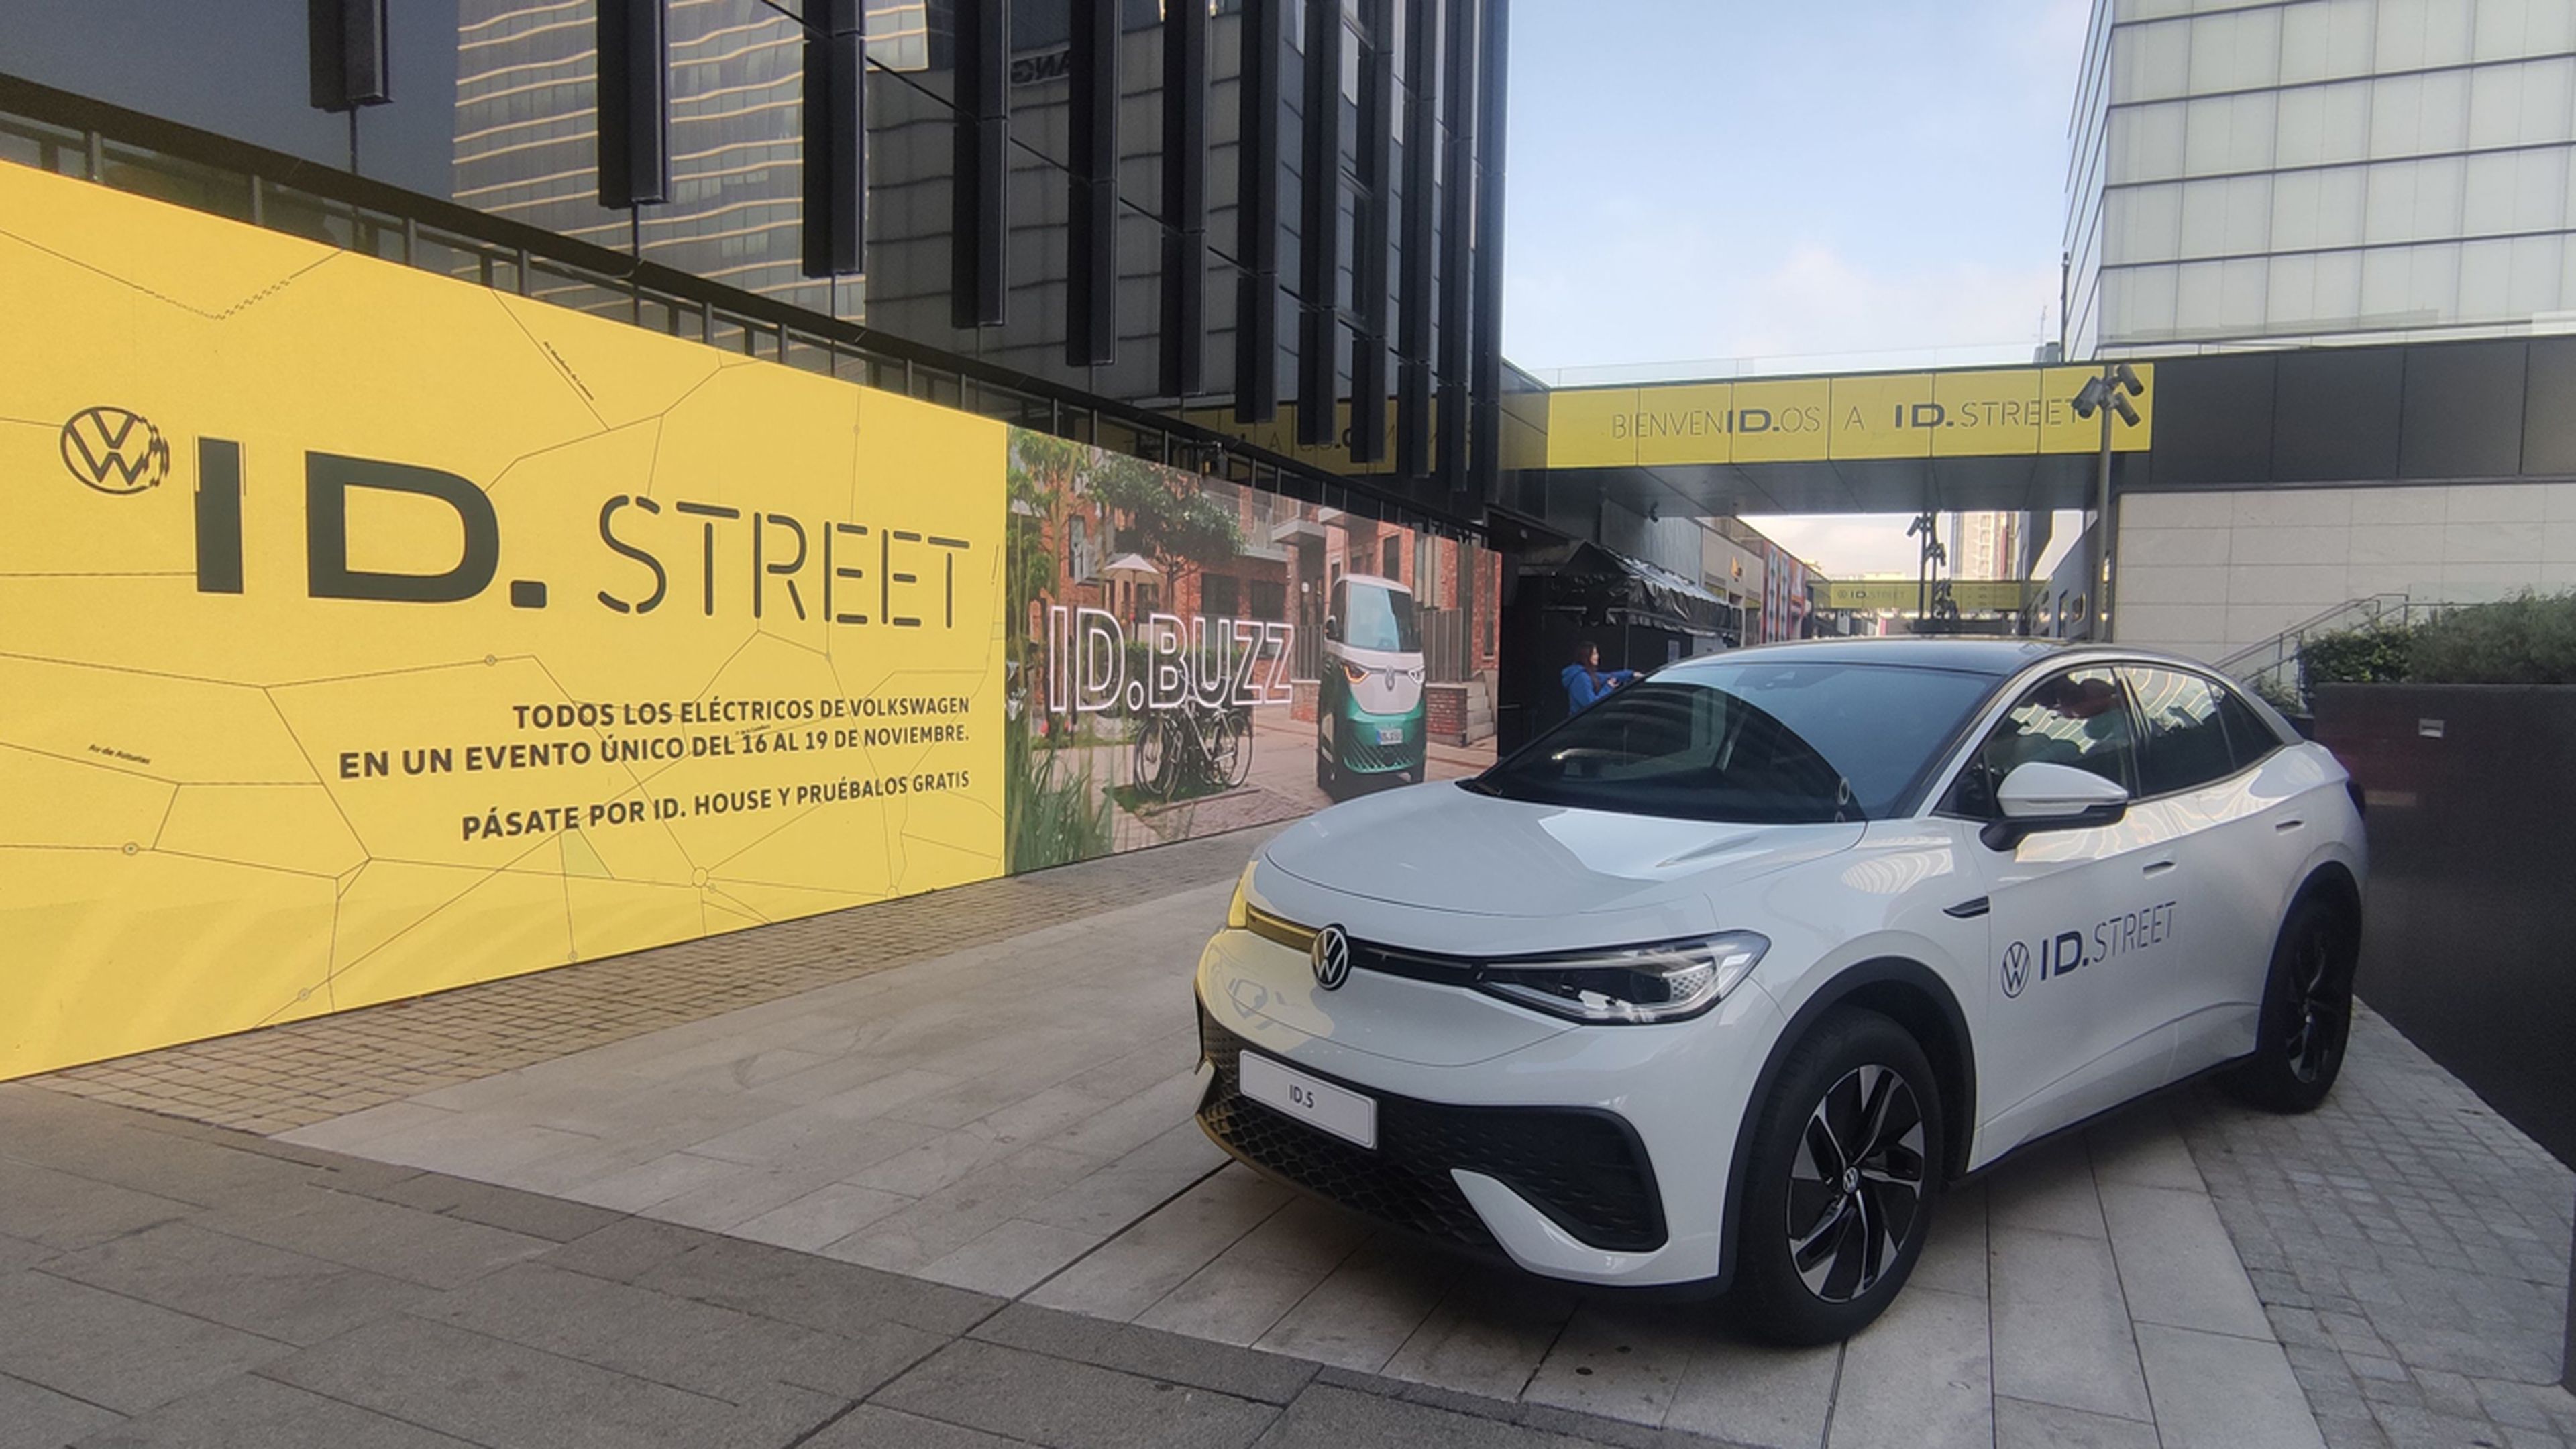 Volkswagen crea su propia calle en Madrid